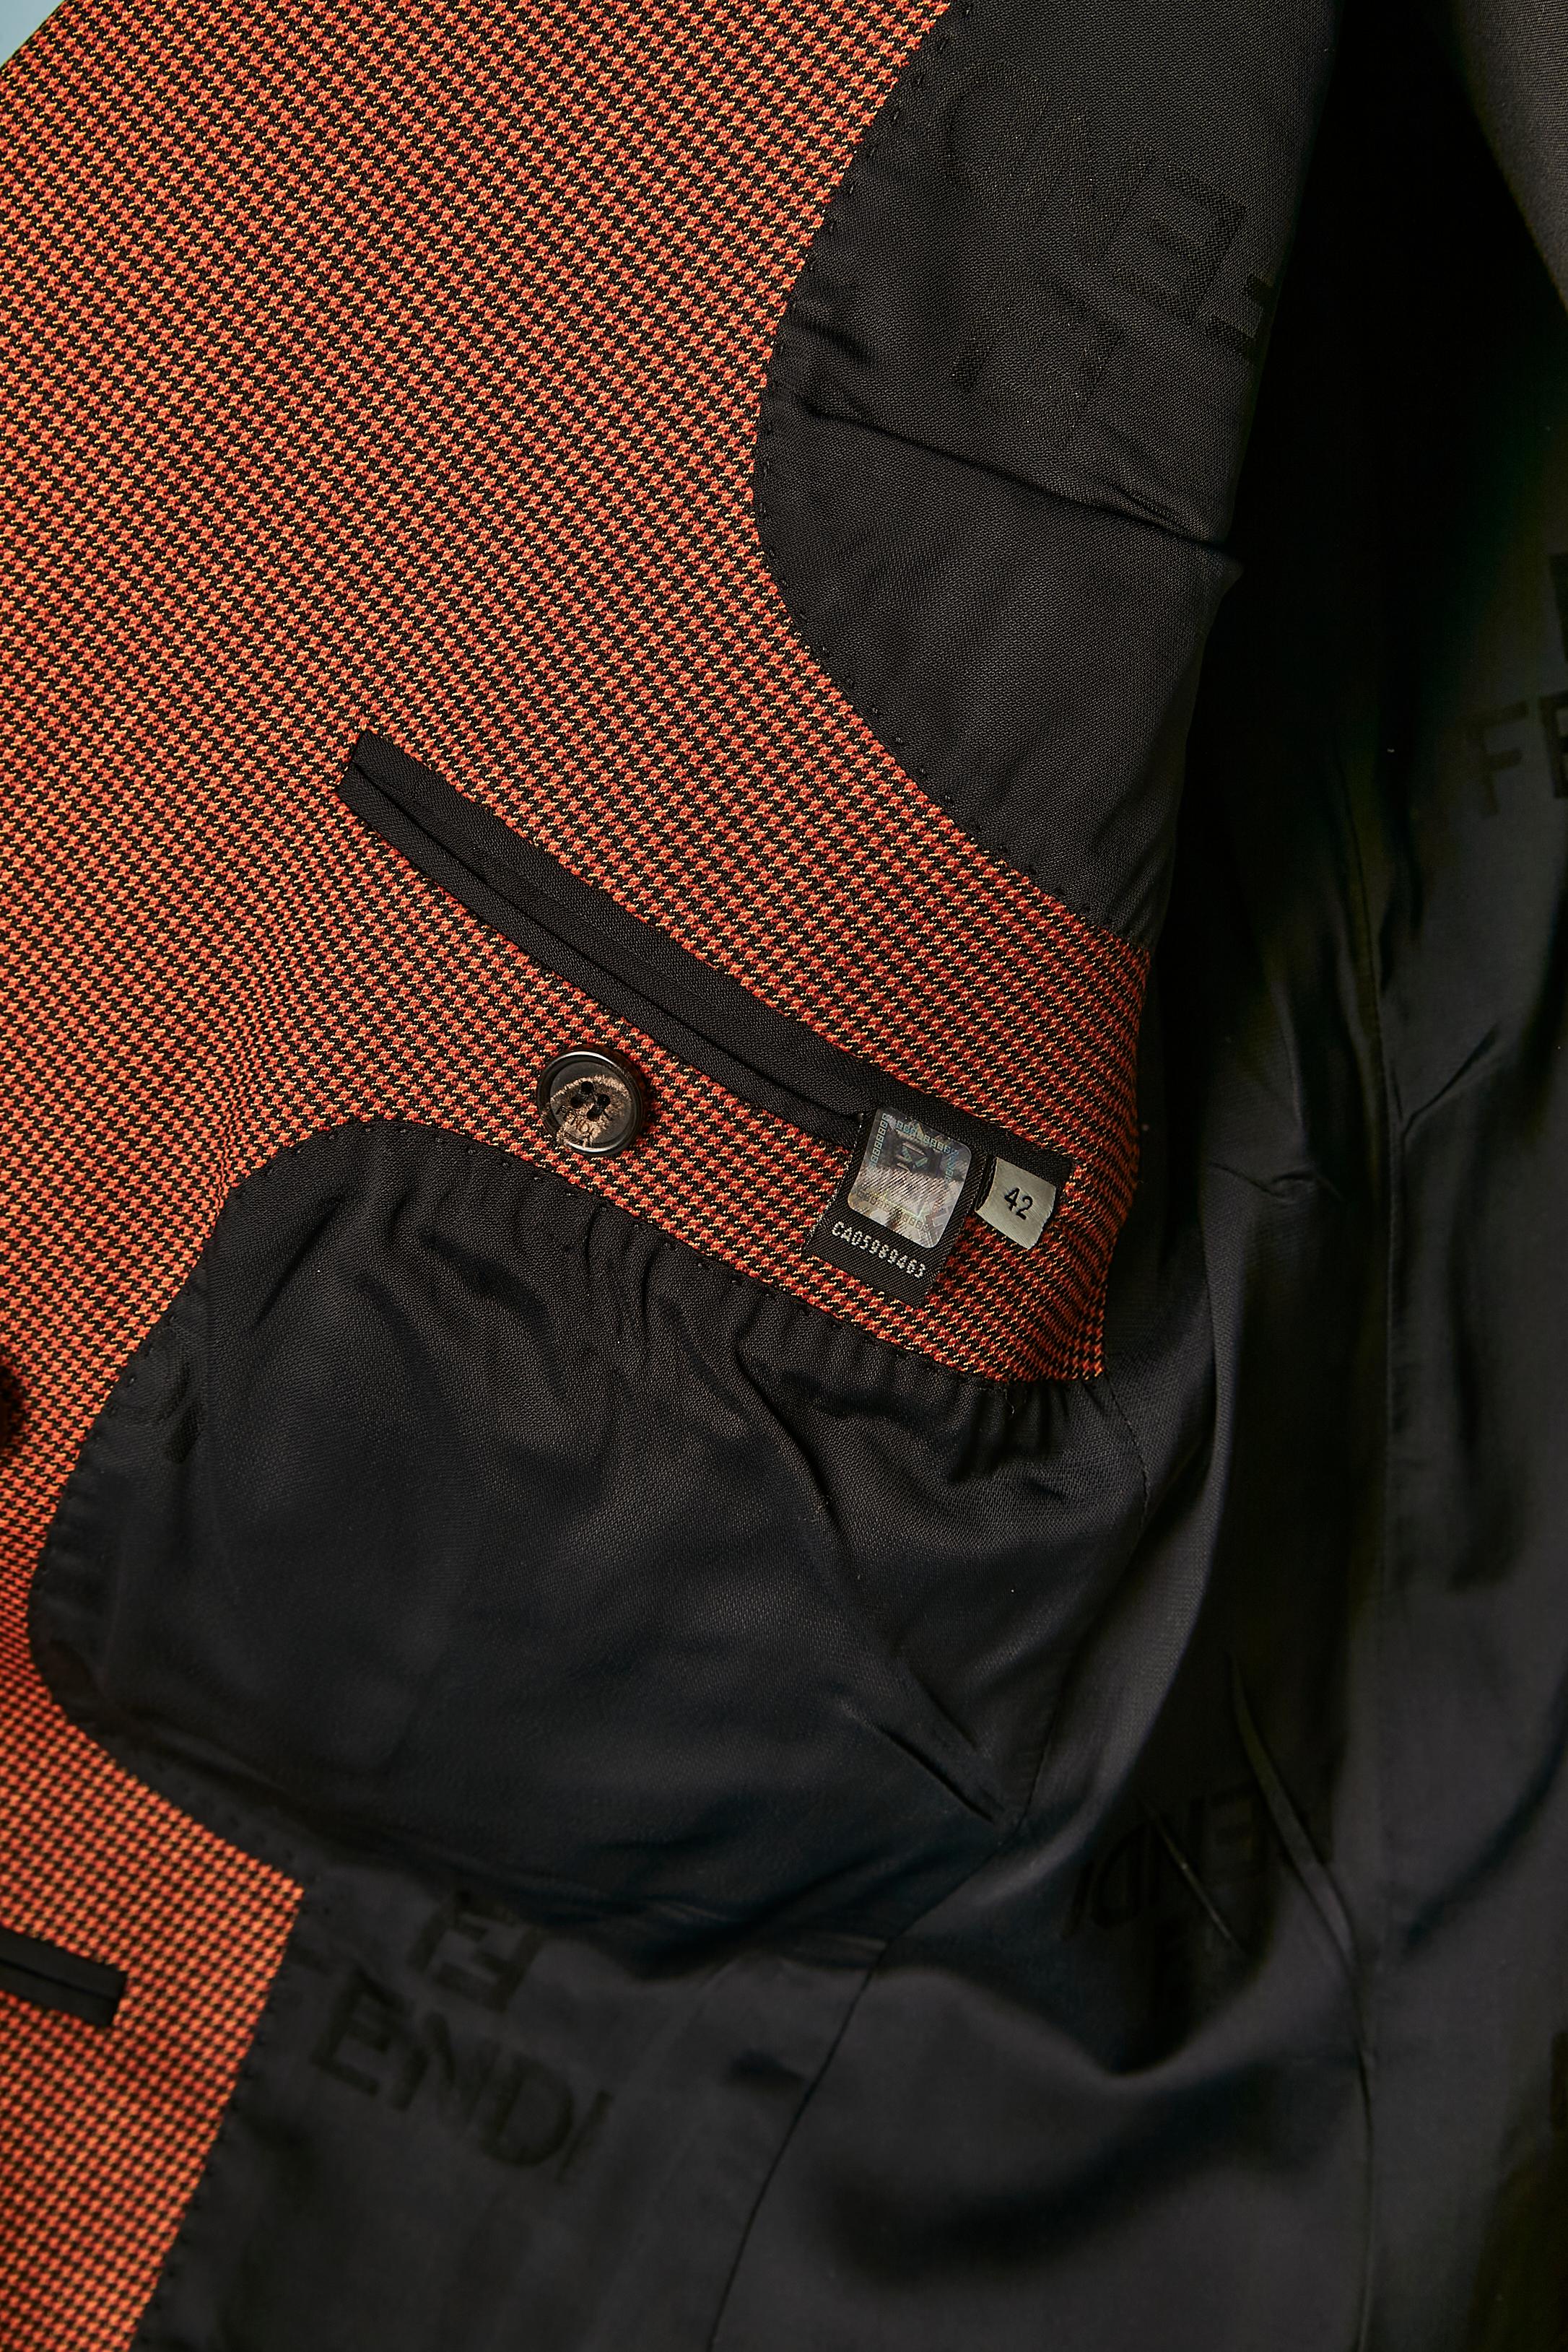 Brown and black mini Pied de poule pattern trouser-suit with fur cuffs FENDI  For Sale 6